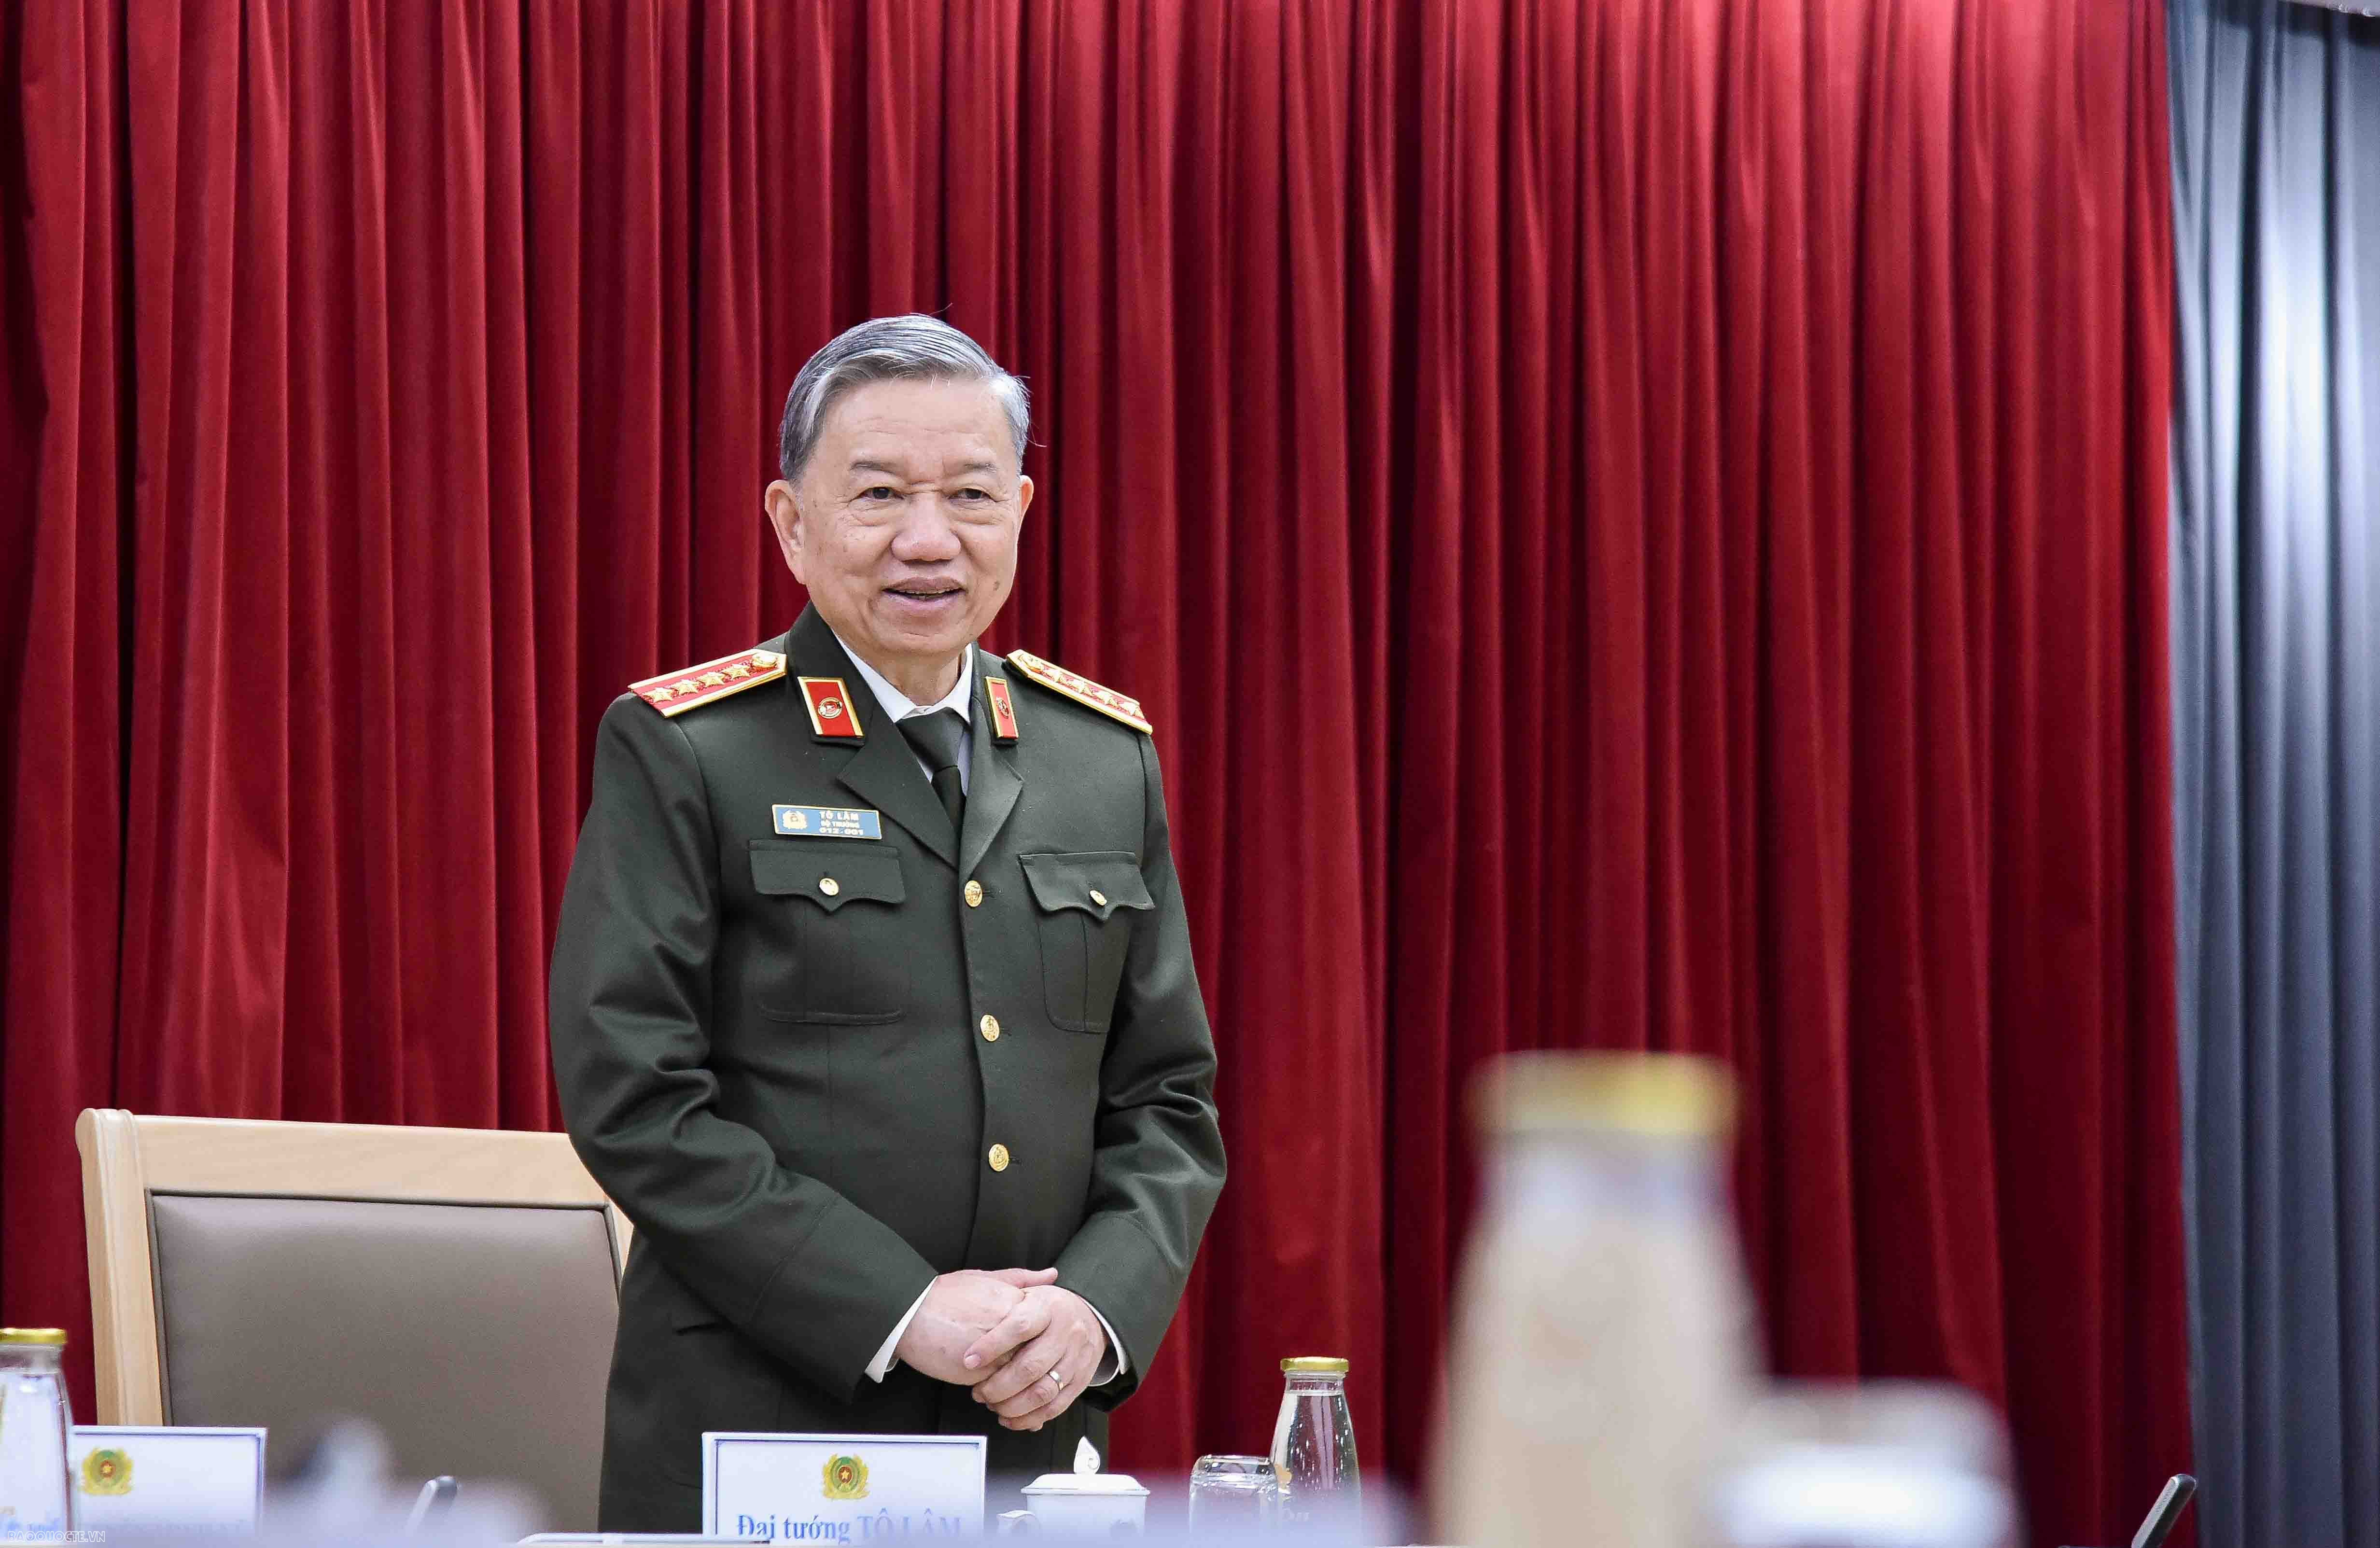 Bộ trưởng Bộ Công an Tô Lâm gặp mặt Trưởng Cơ quan đại diện Việt Nam ở nước ngoài